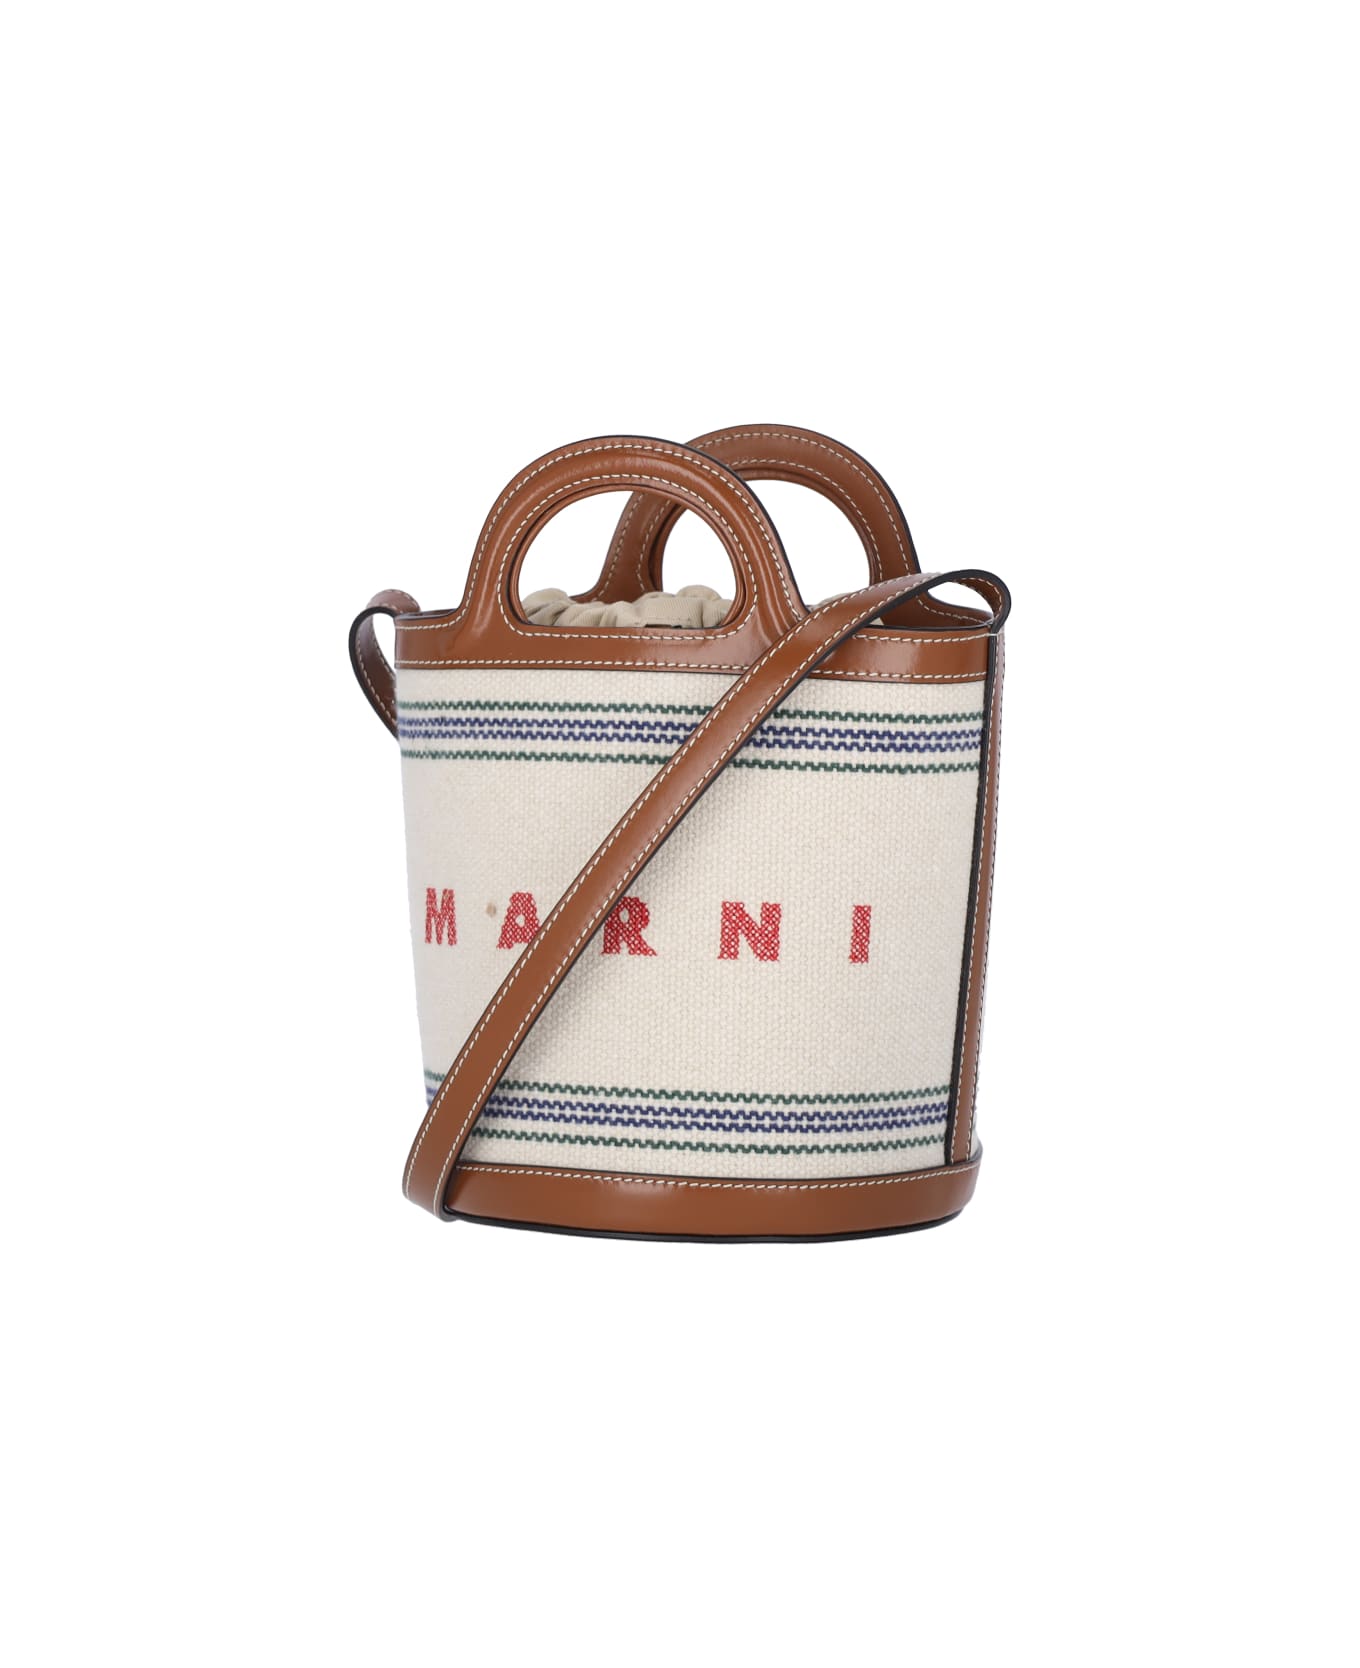 Marni Small Bucket Bag "tropicalia" - Crema